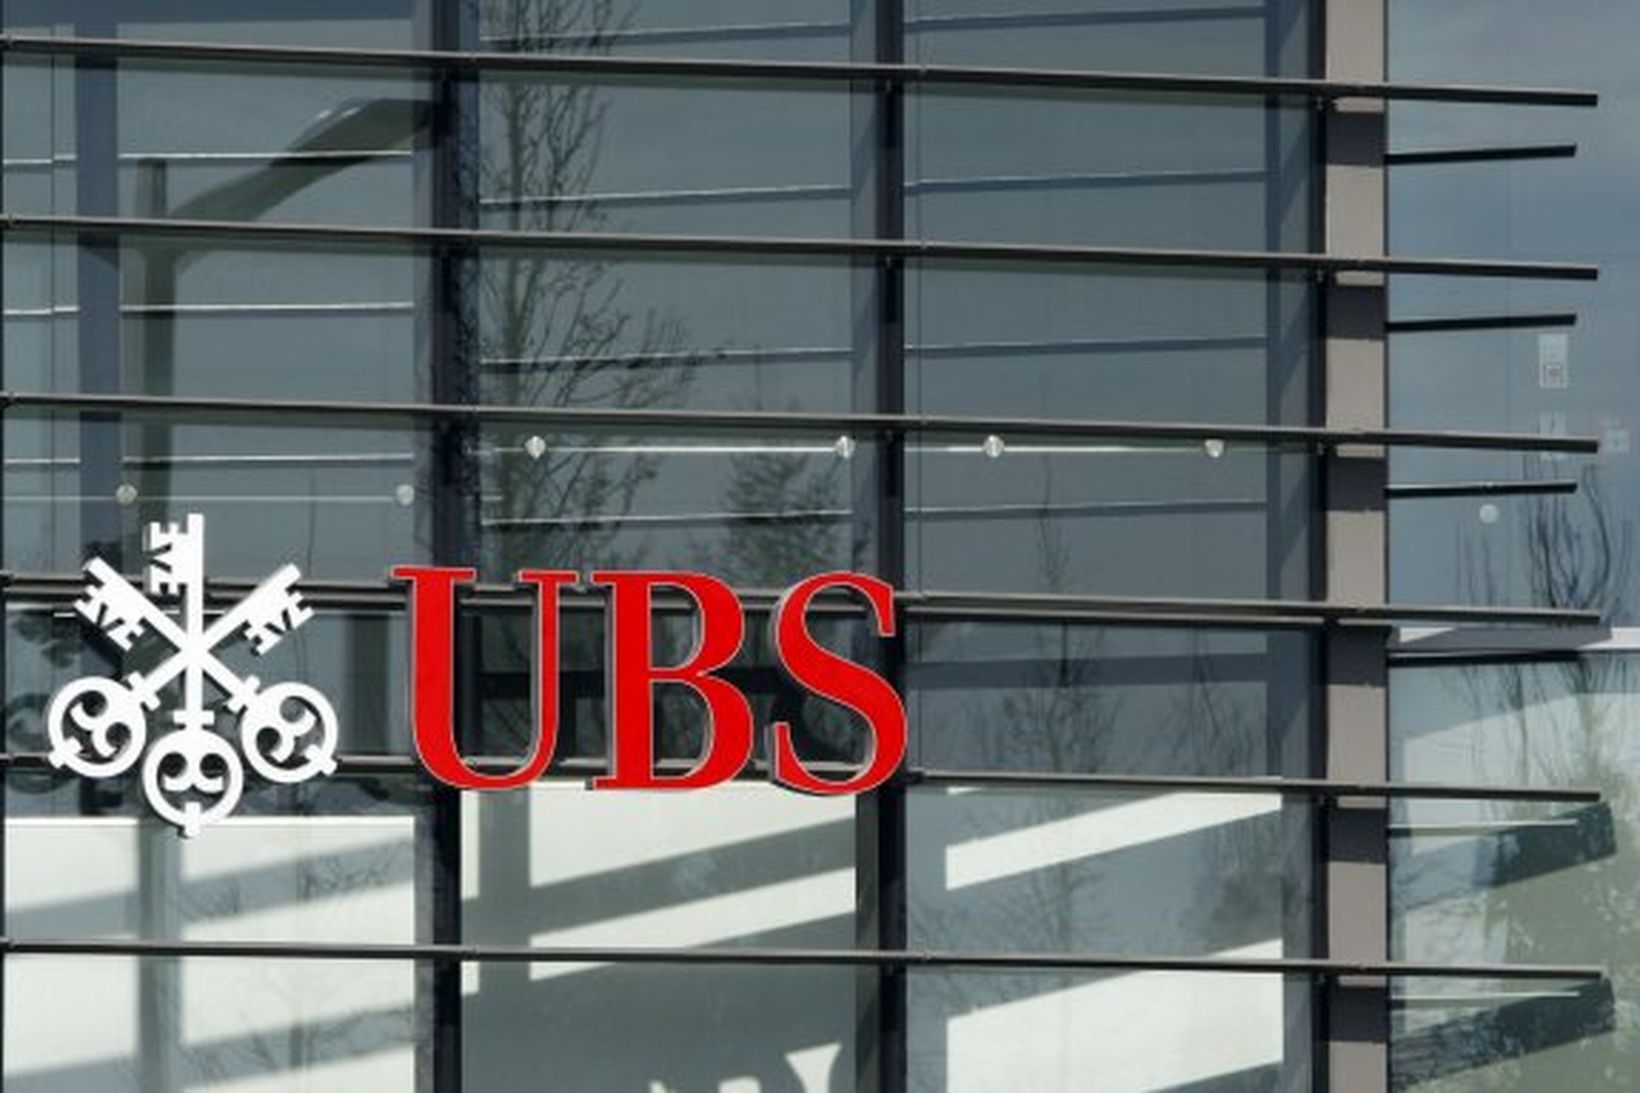 Merki svissneska bankans UBS í einu af útibúum hans.